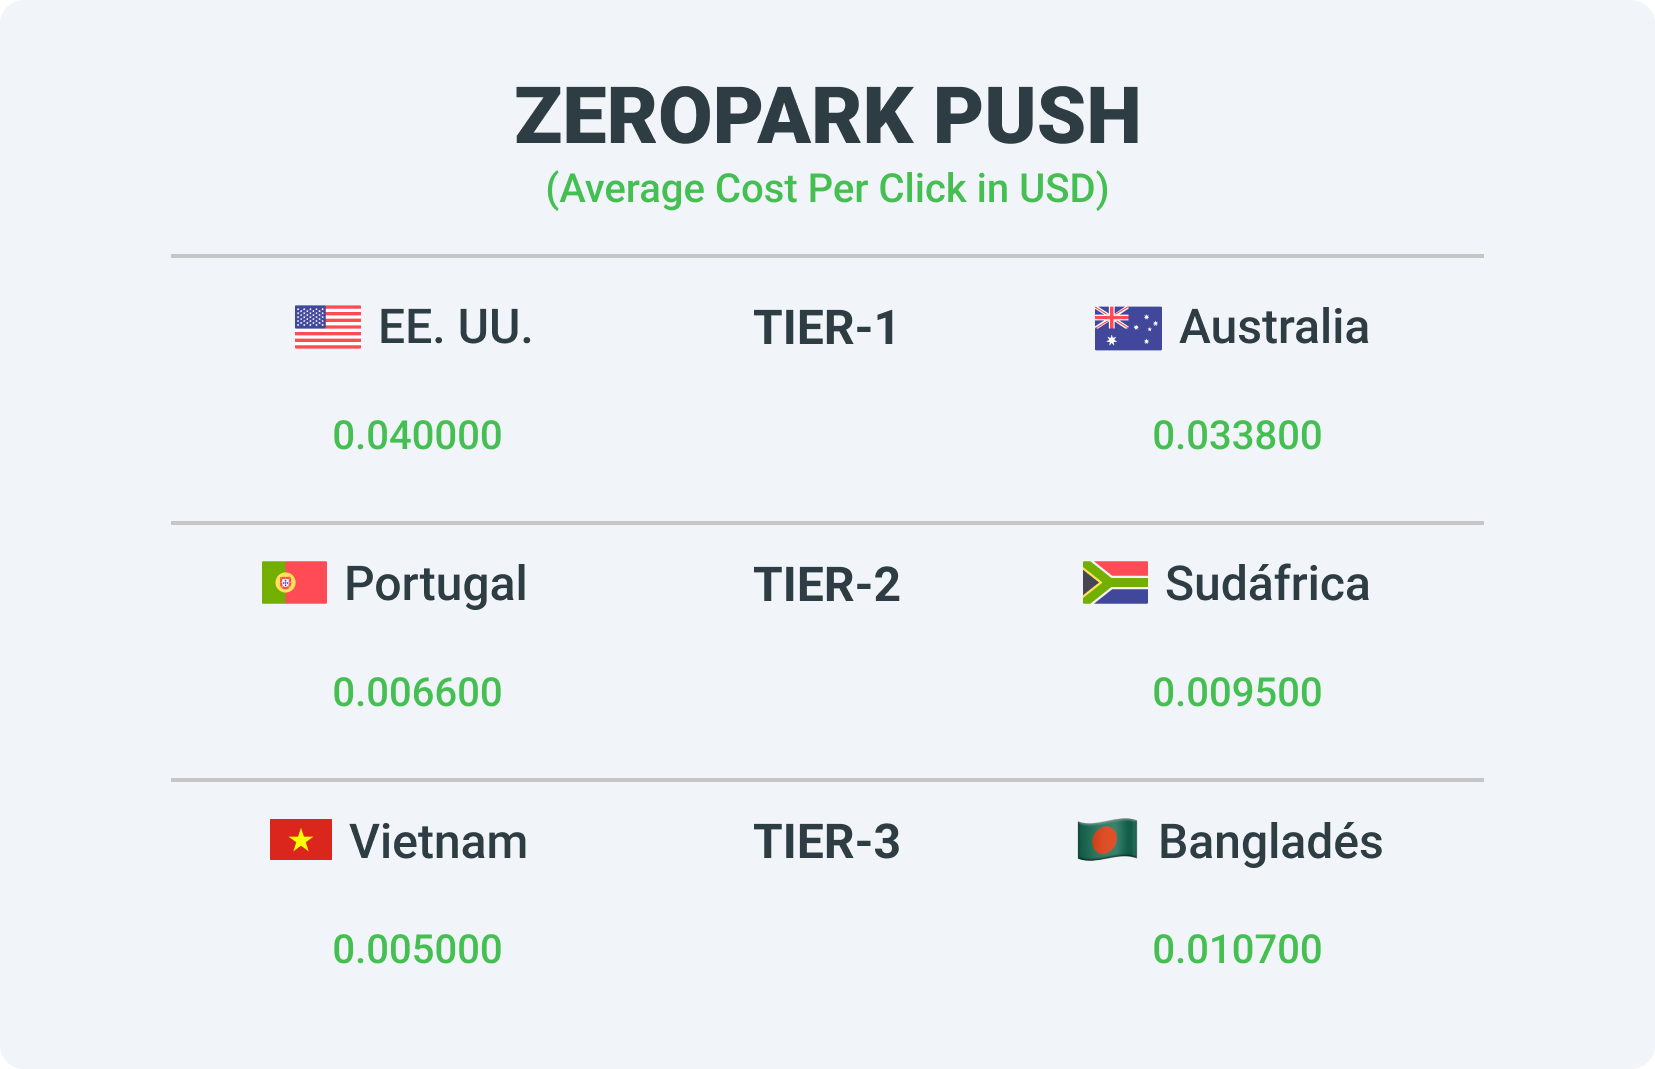 Las tarifas de diferentes tiers de la red de publicidad ZeroPark Push